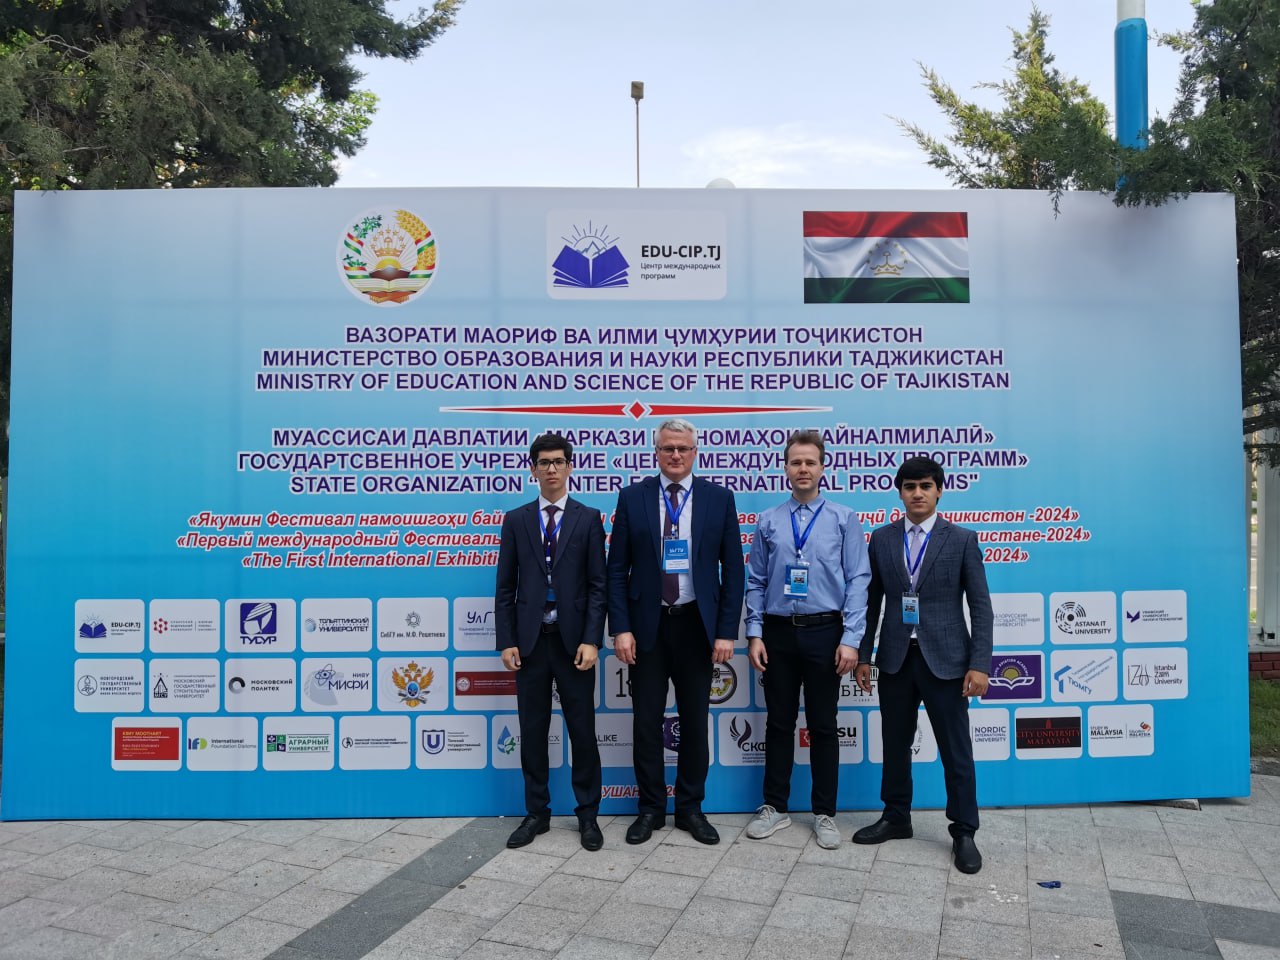 УлГТУ принимает участие в международном фестивале-выставке университетов  в Таджикистане